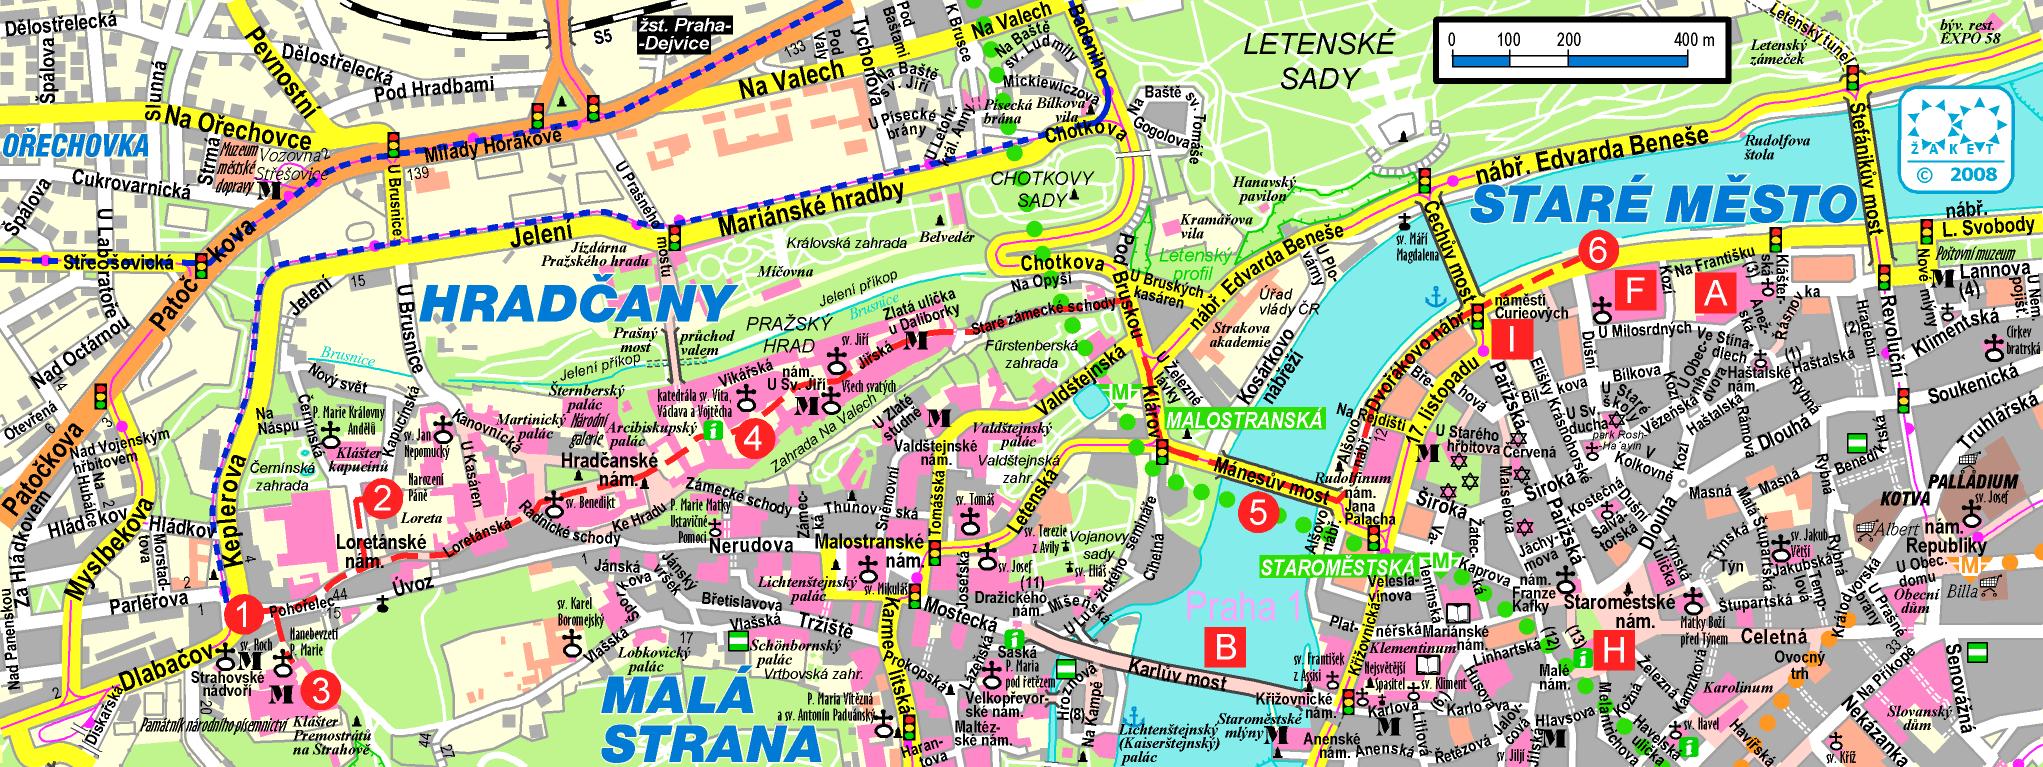 Detail of tour map